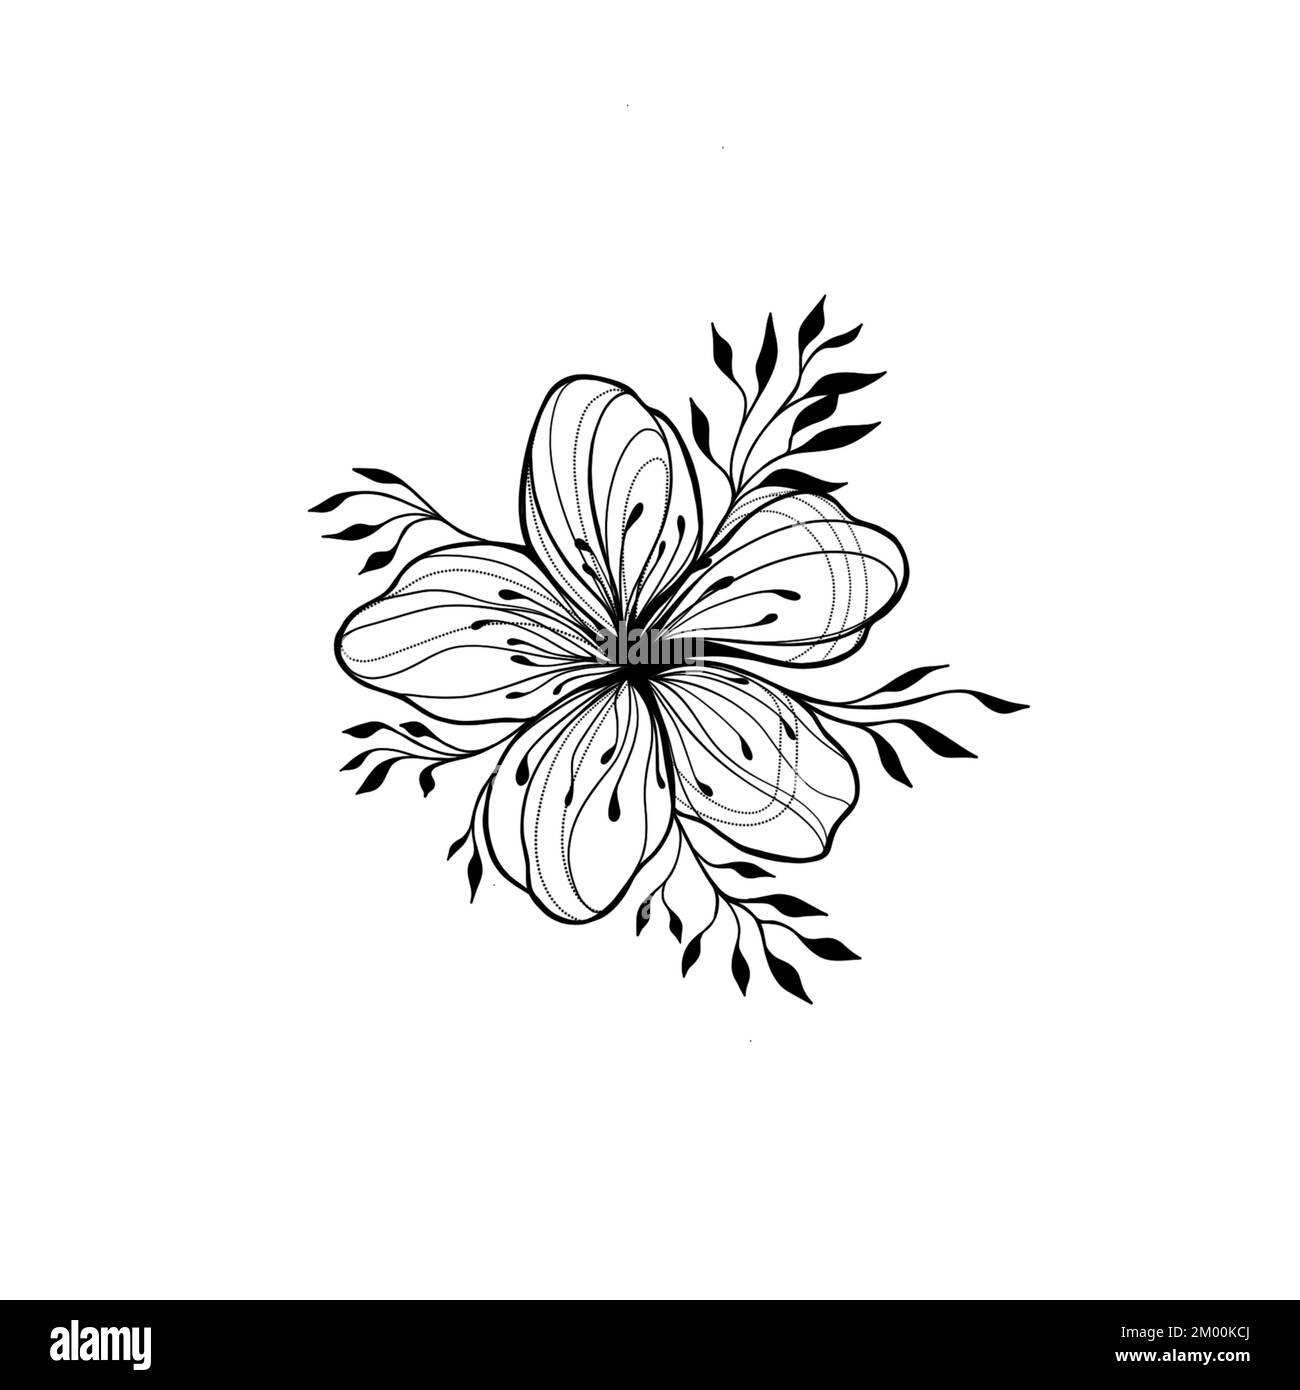 Fleur d'amande isolée sur blanc. Illustration botanique vintage dessinée à la main. Fleurs printanières de pommier ou de cerisier. Banque D'Images